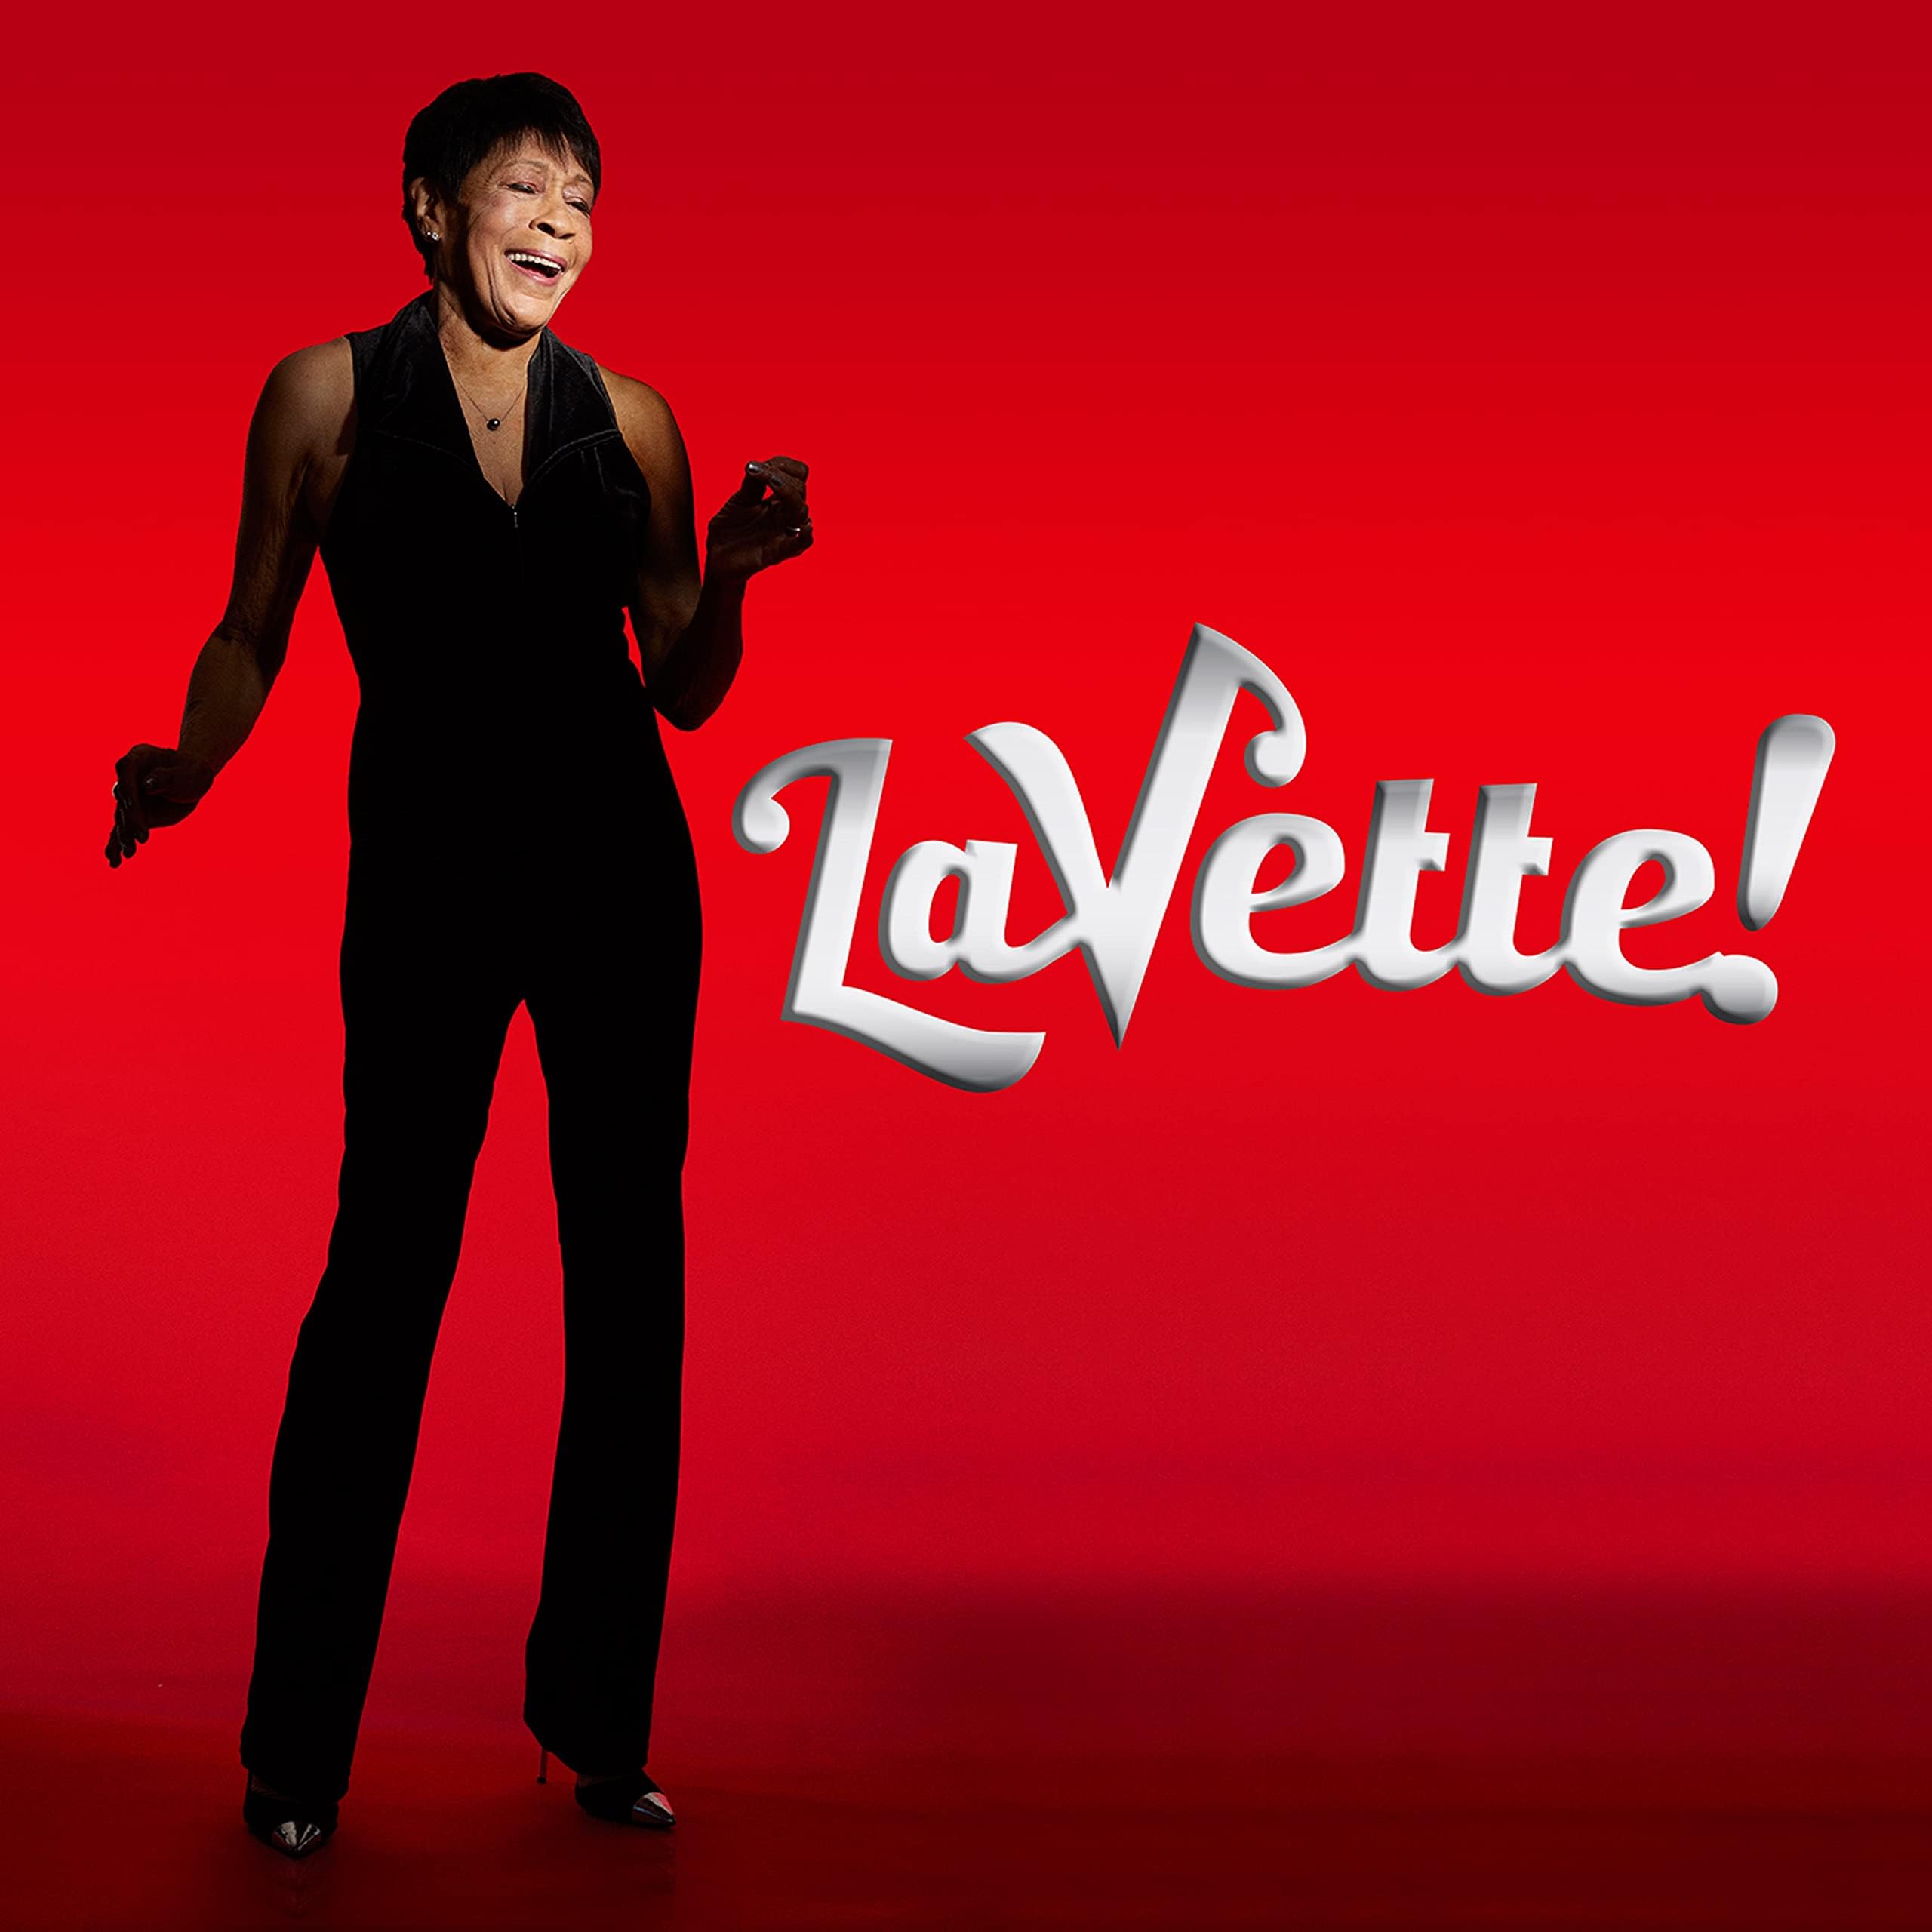 LaVette! VINYL - Best